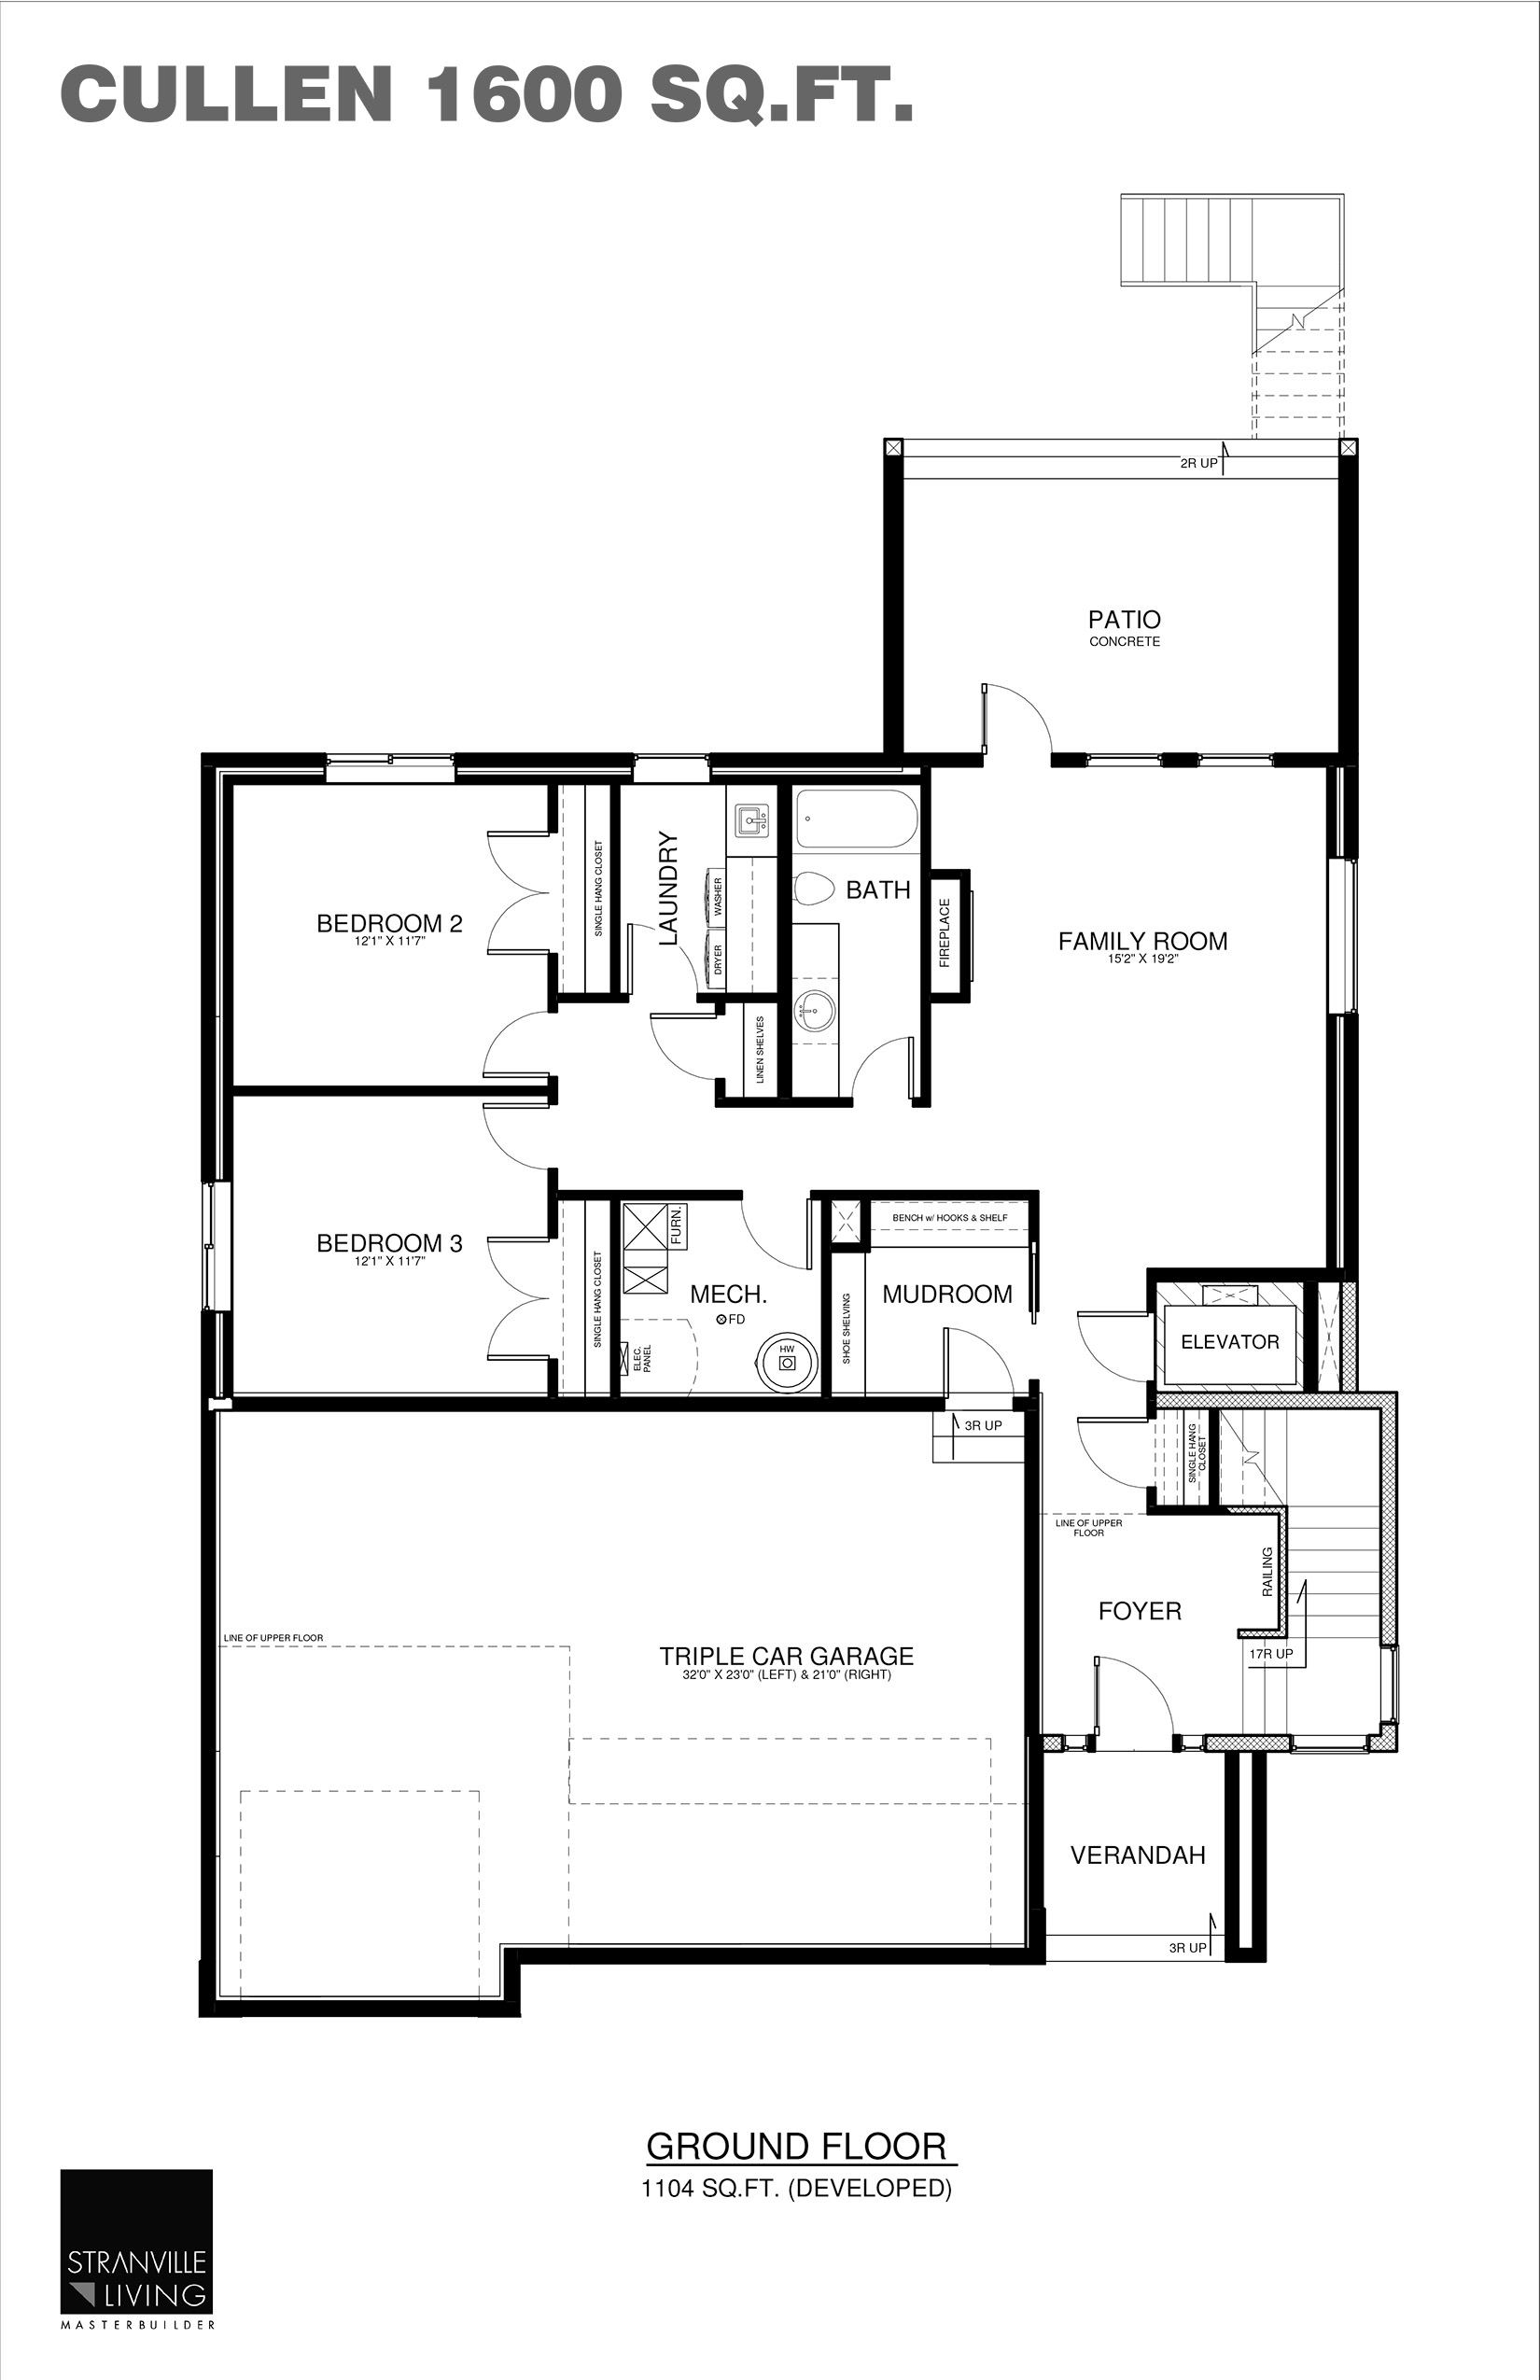 Cullen second floor plan